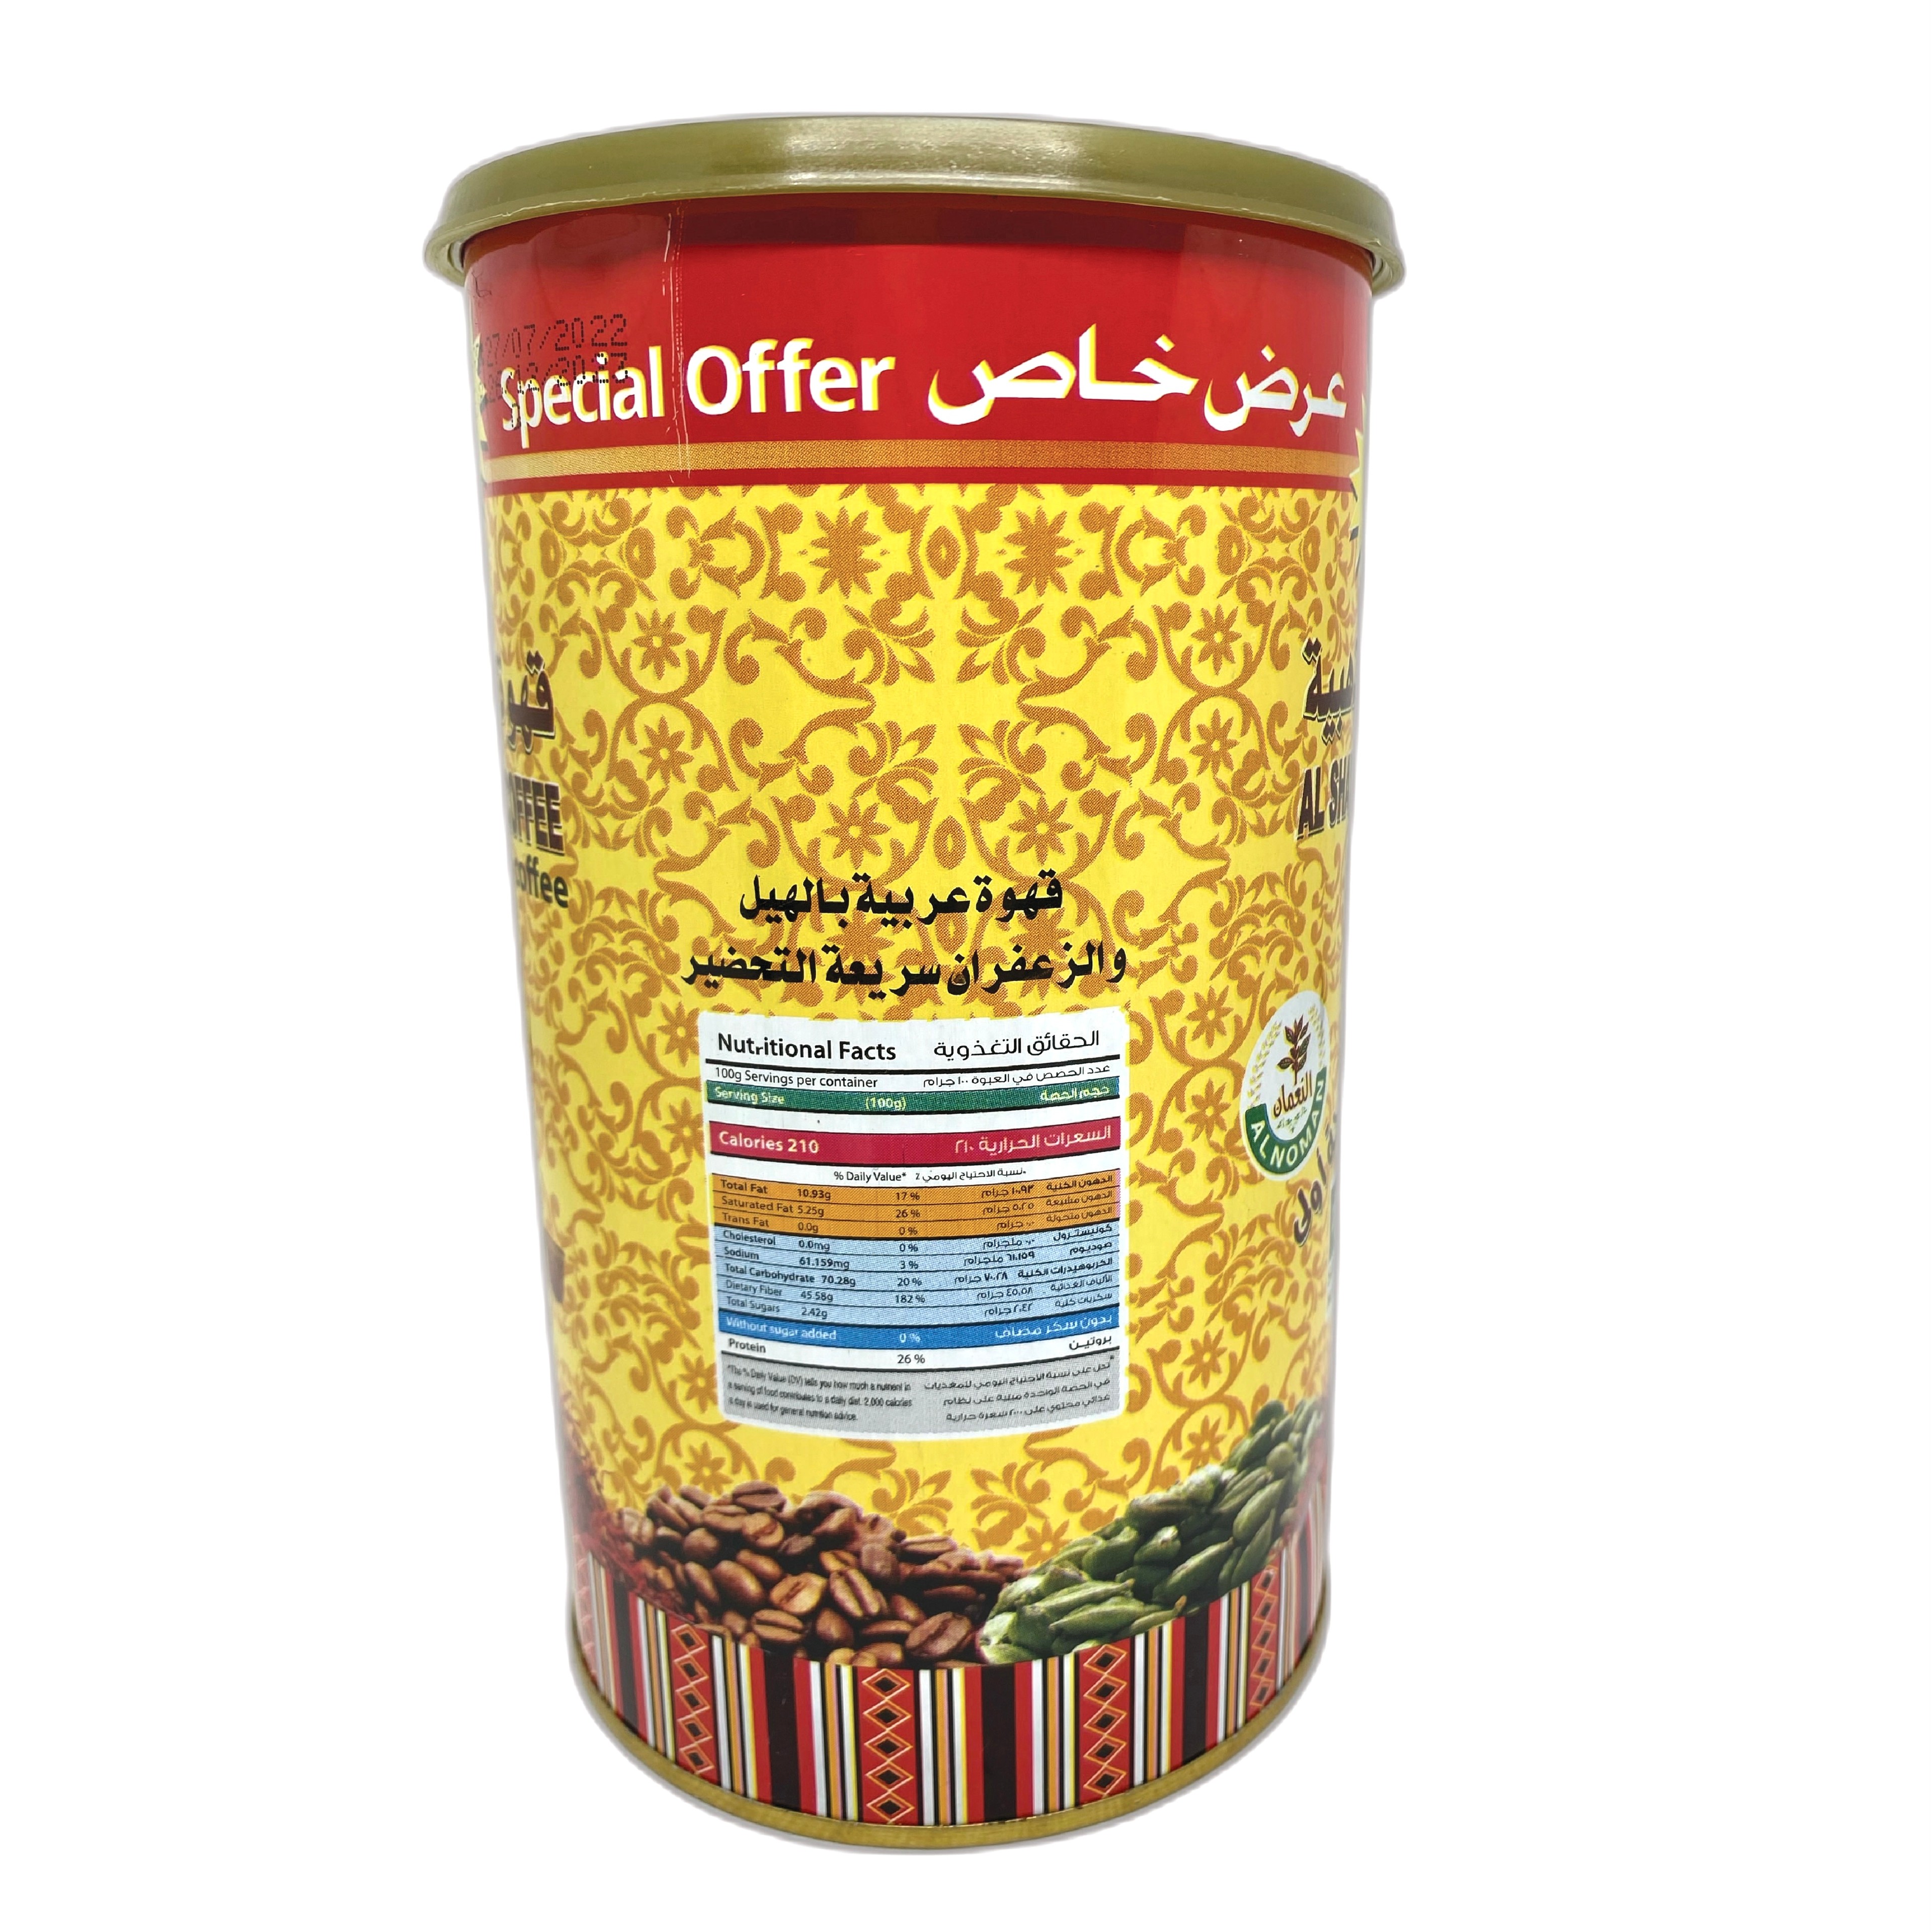 AL SHAYUKH GOLDEN COFEE ARABIC COFFEE